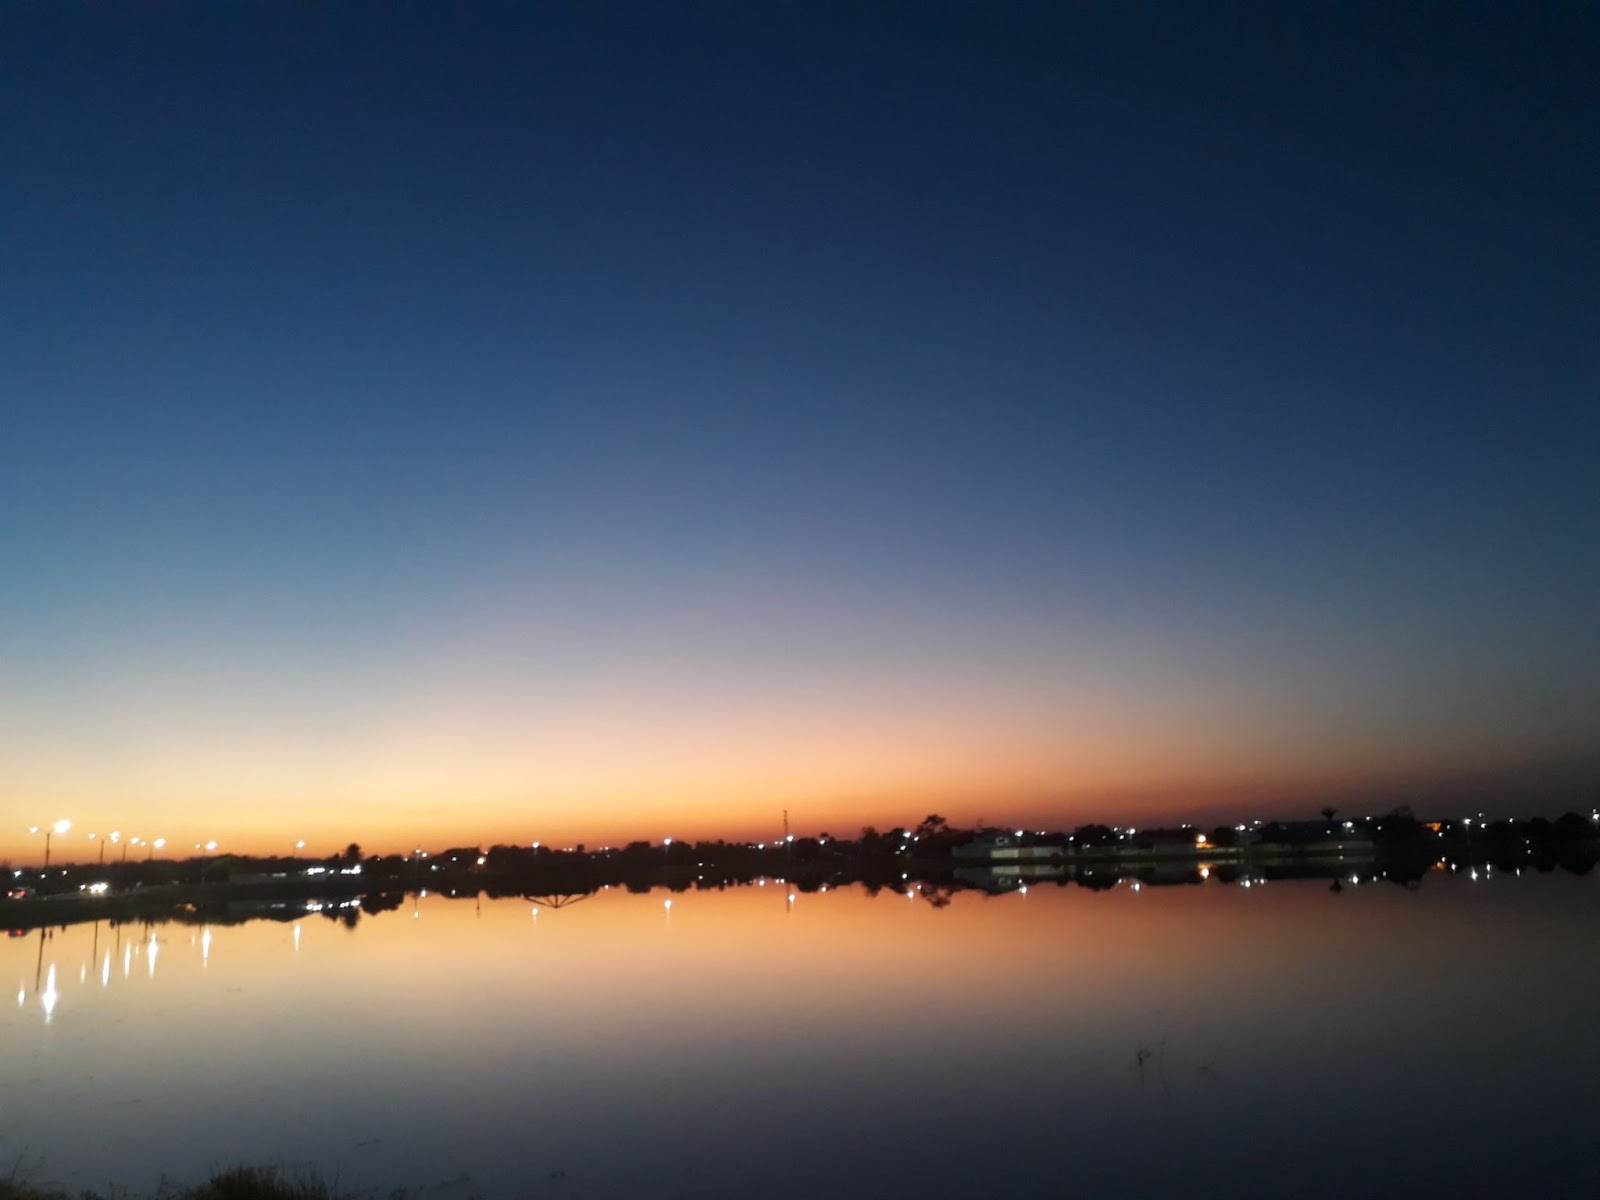 Pôr do sol sobre o Açude Grande, em Campo Maior. Por causa da chegada da noite, o céu está dividido entre tons de azul e laranja. A água do açude reflete os pontos luminosos da iluminação noturna da cidade.